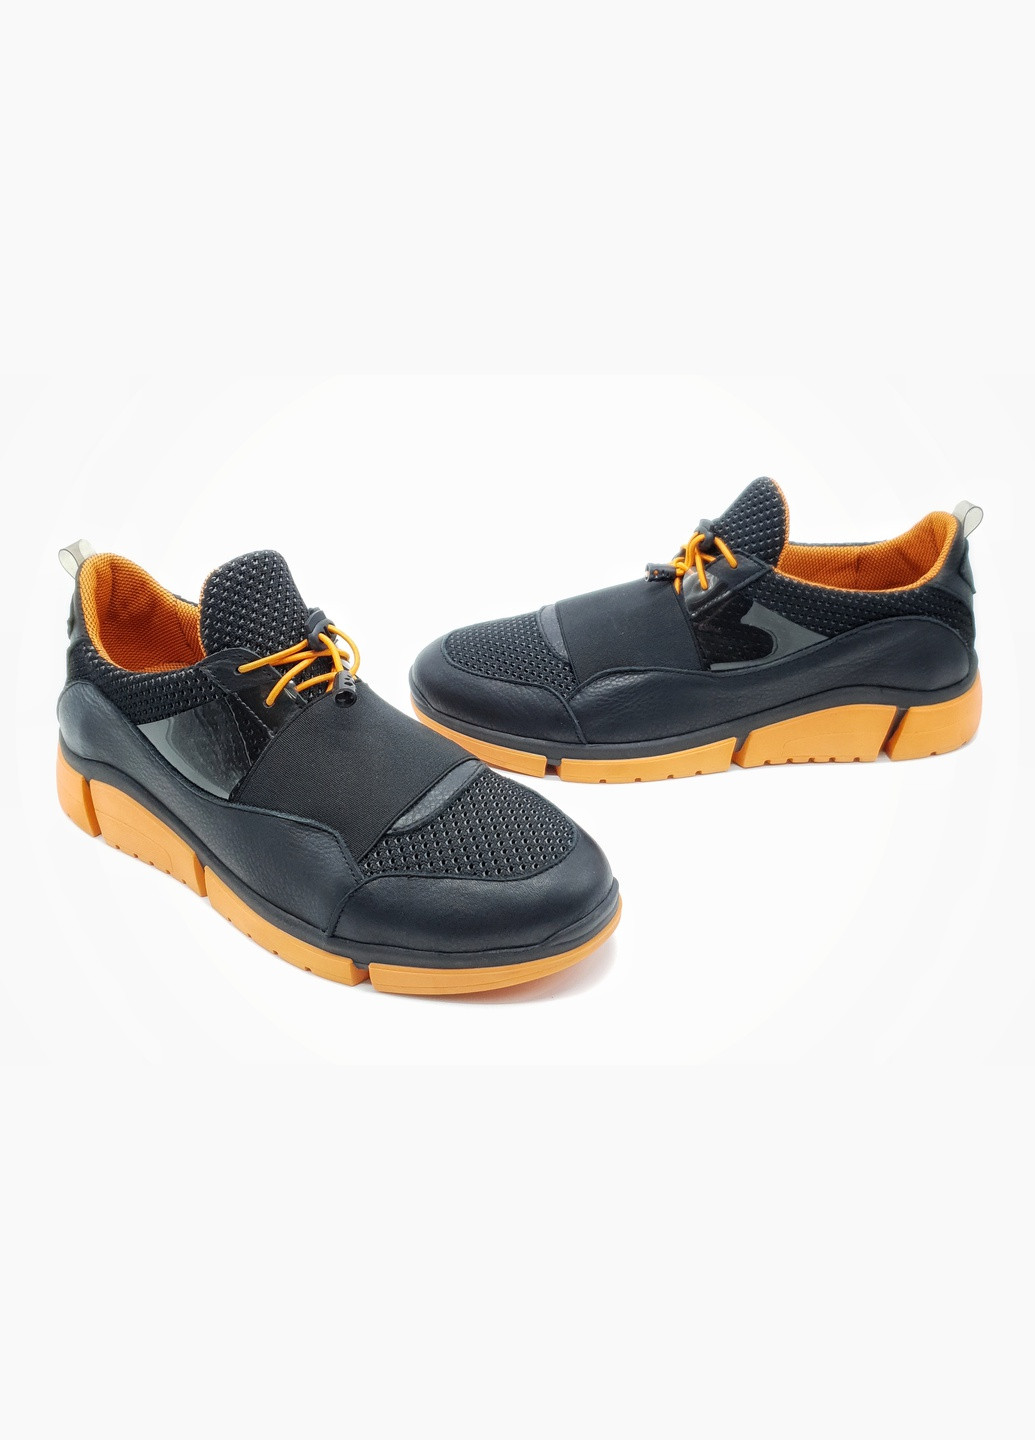 Черные мужские кроссовки черные кожаные g-19-2 27,5 см (р) Gross